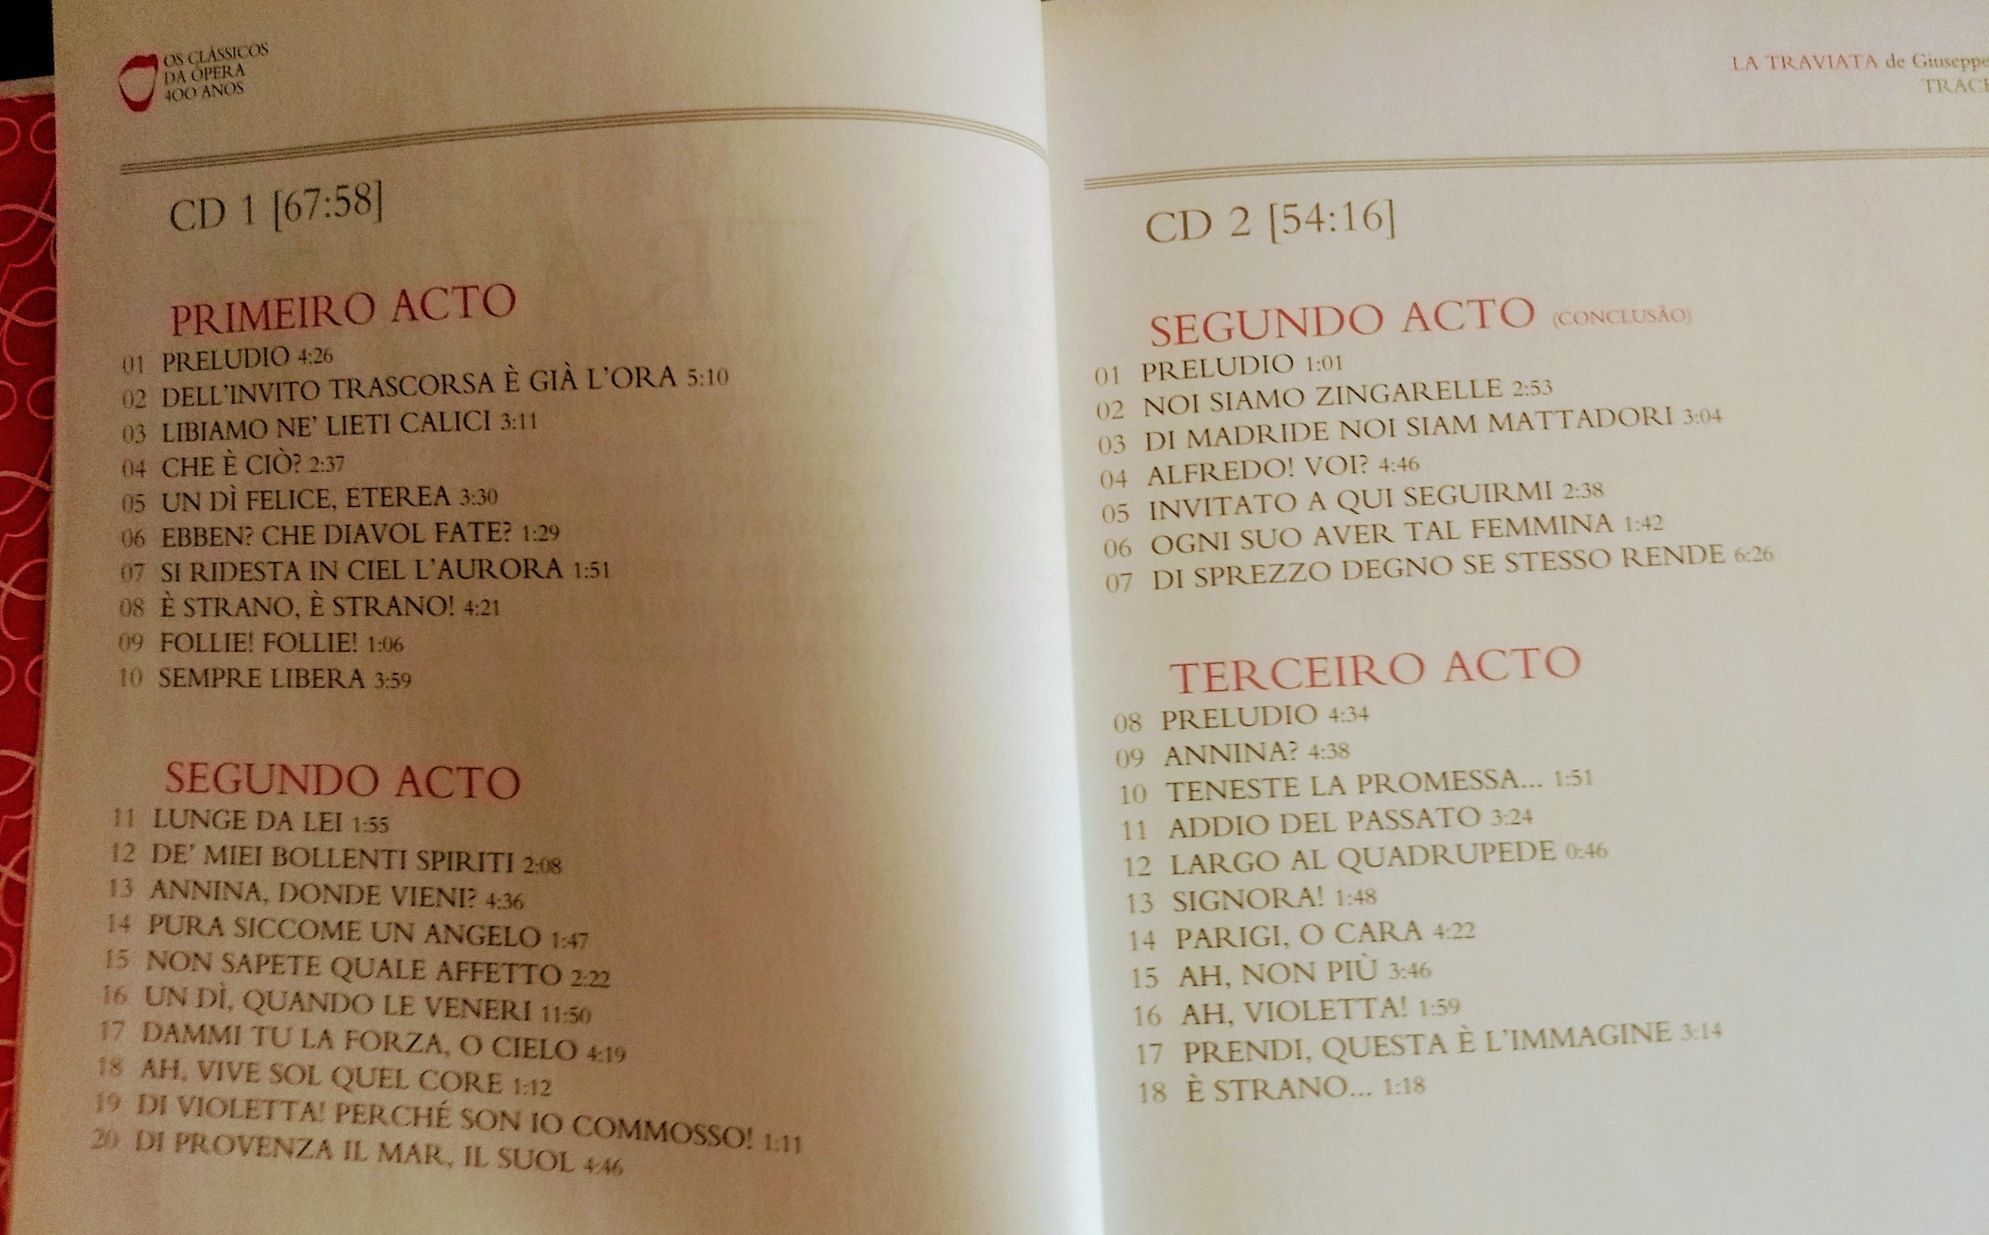 CD duplo La Traviata com libreto